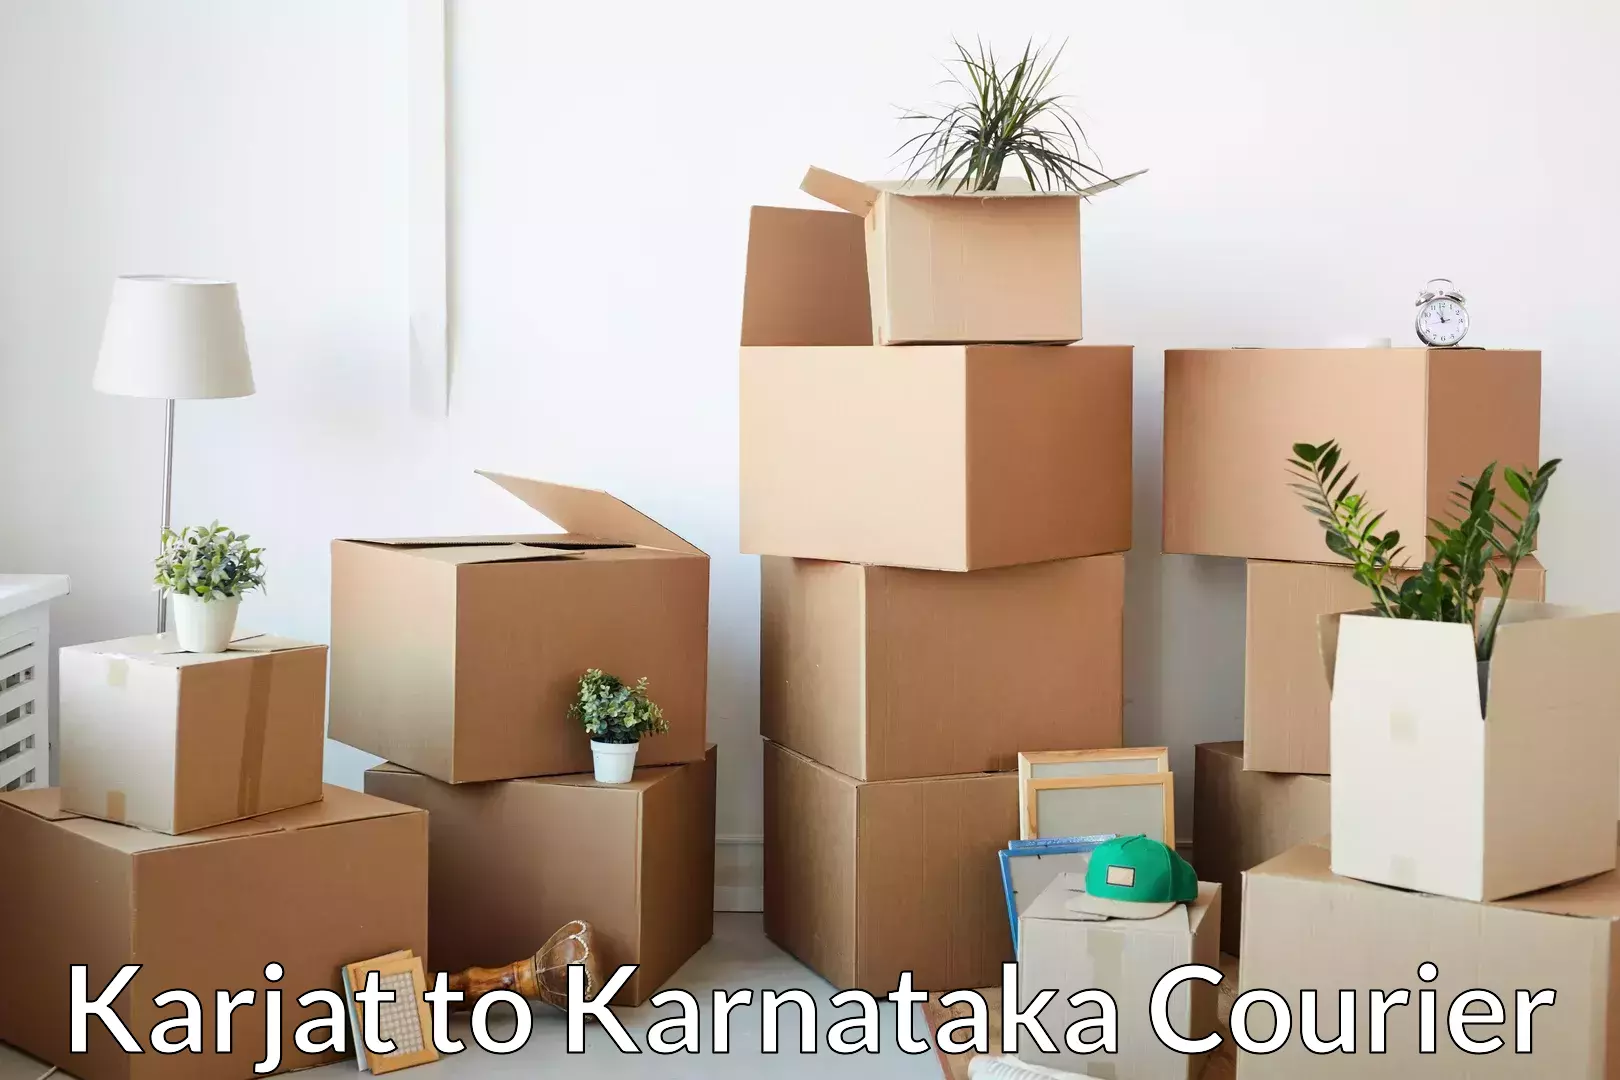 Professional furniture movers Karjat to Sakleshpur